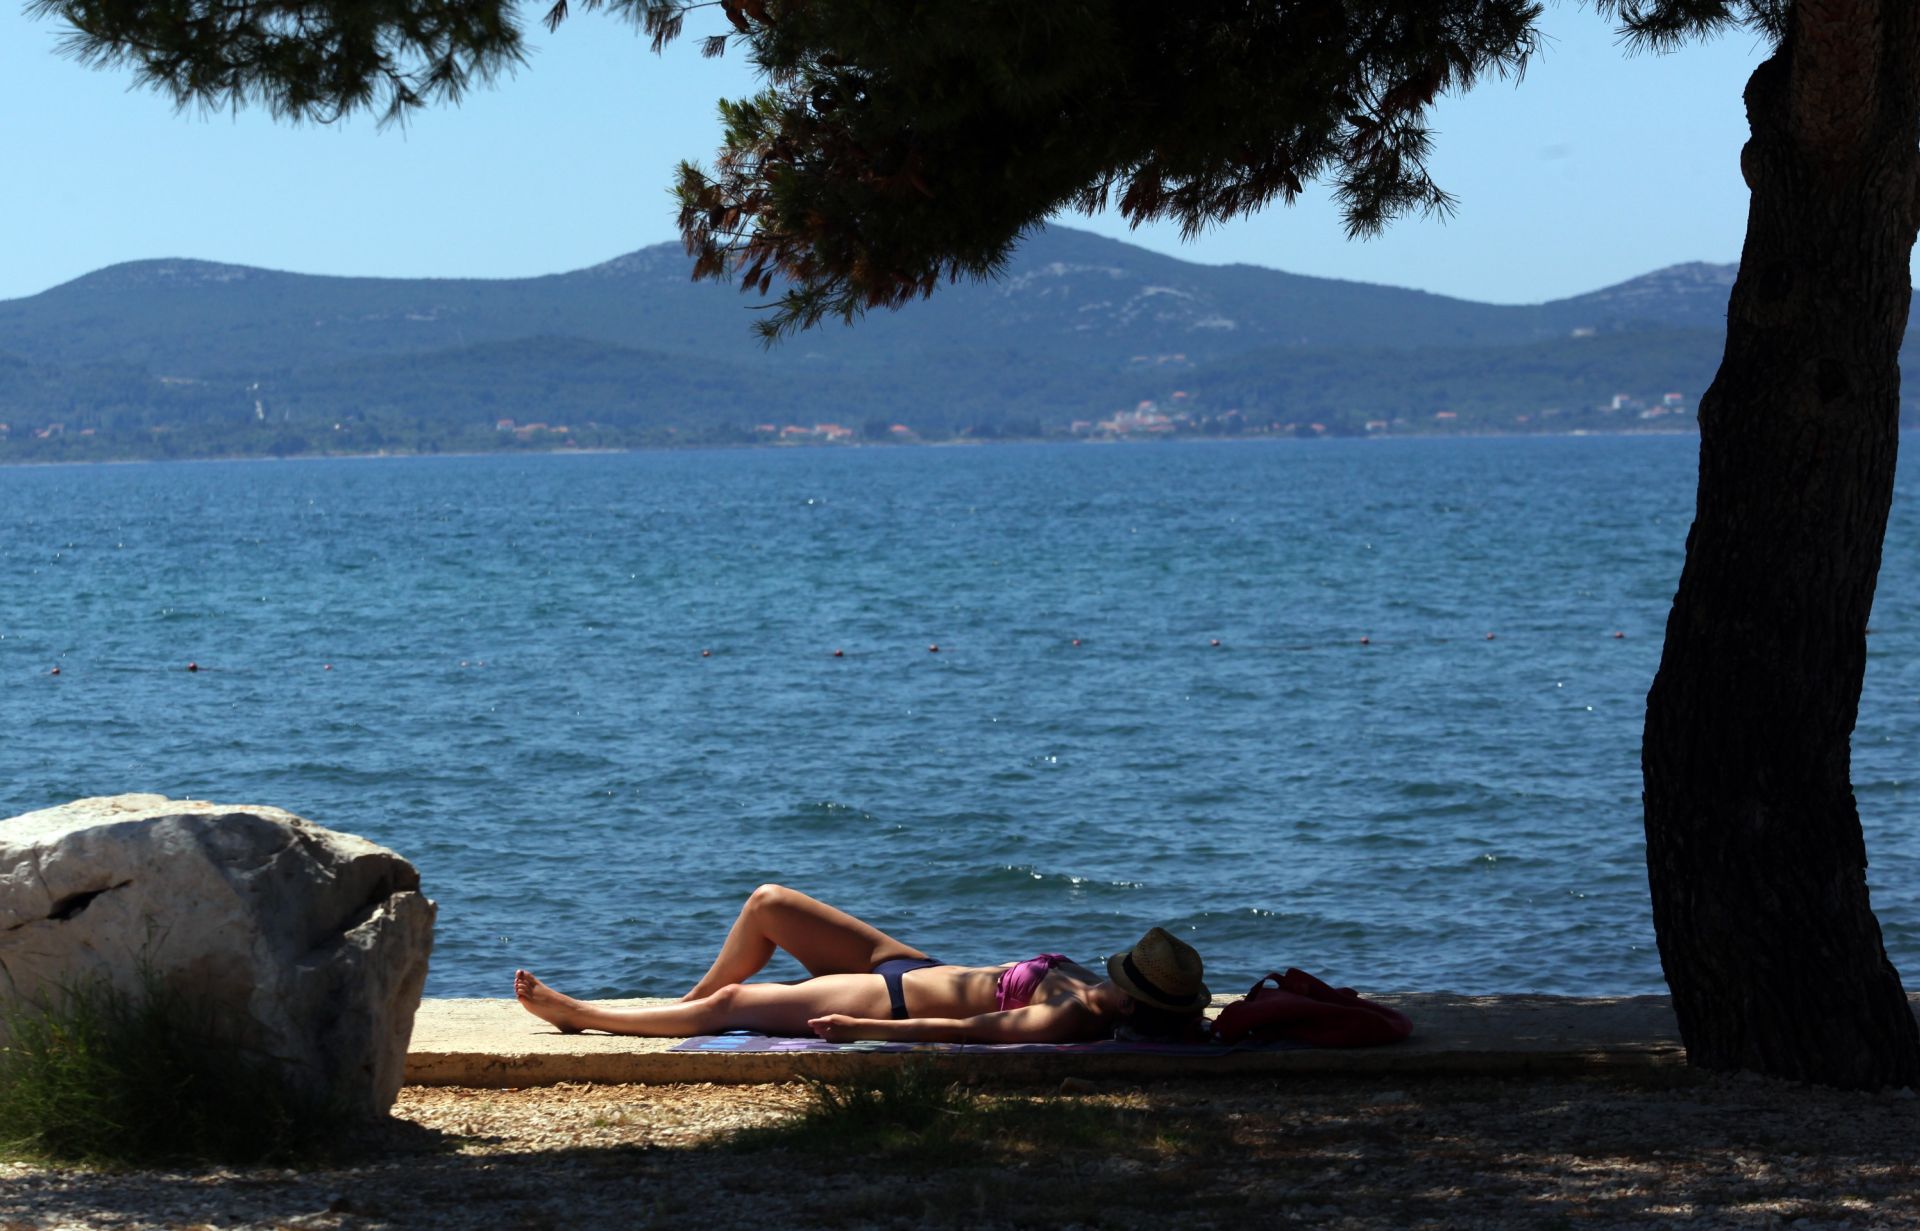 15.06.2013., Zadar - Naglo zatopljenje izmamilo je prve kupace na plaze, a ukoliko vrijeme ostane ovako toplo ovih se dana ocekuju pune plaze kupaca.
Photo: Zeljko Mrsic/PIXSELL